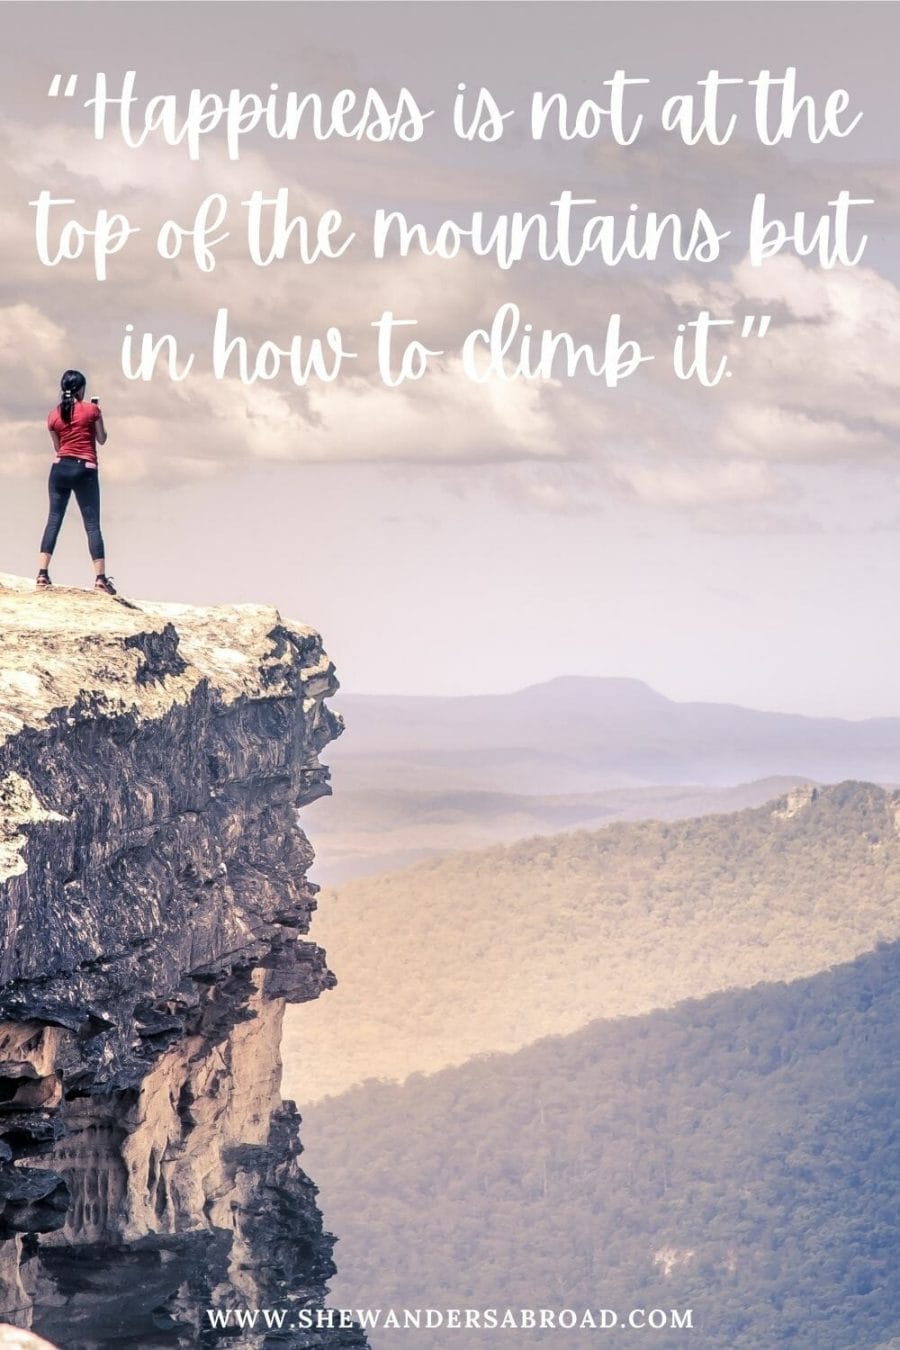 Mountain climbing quotes